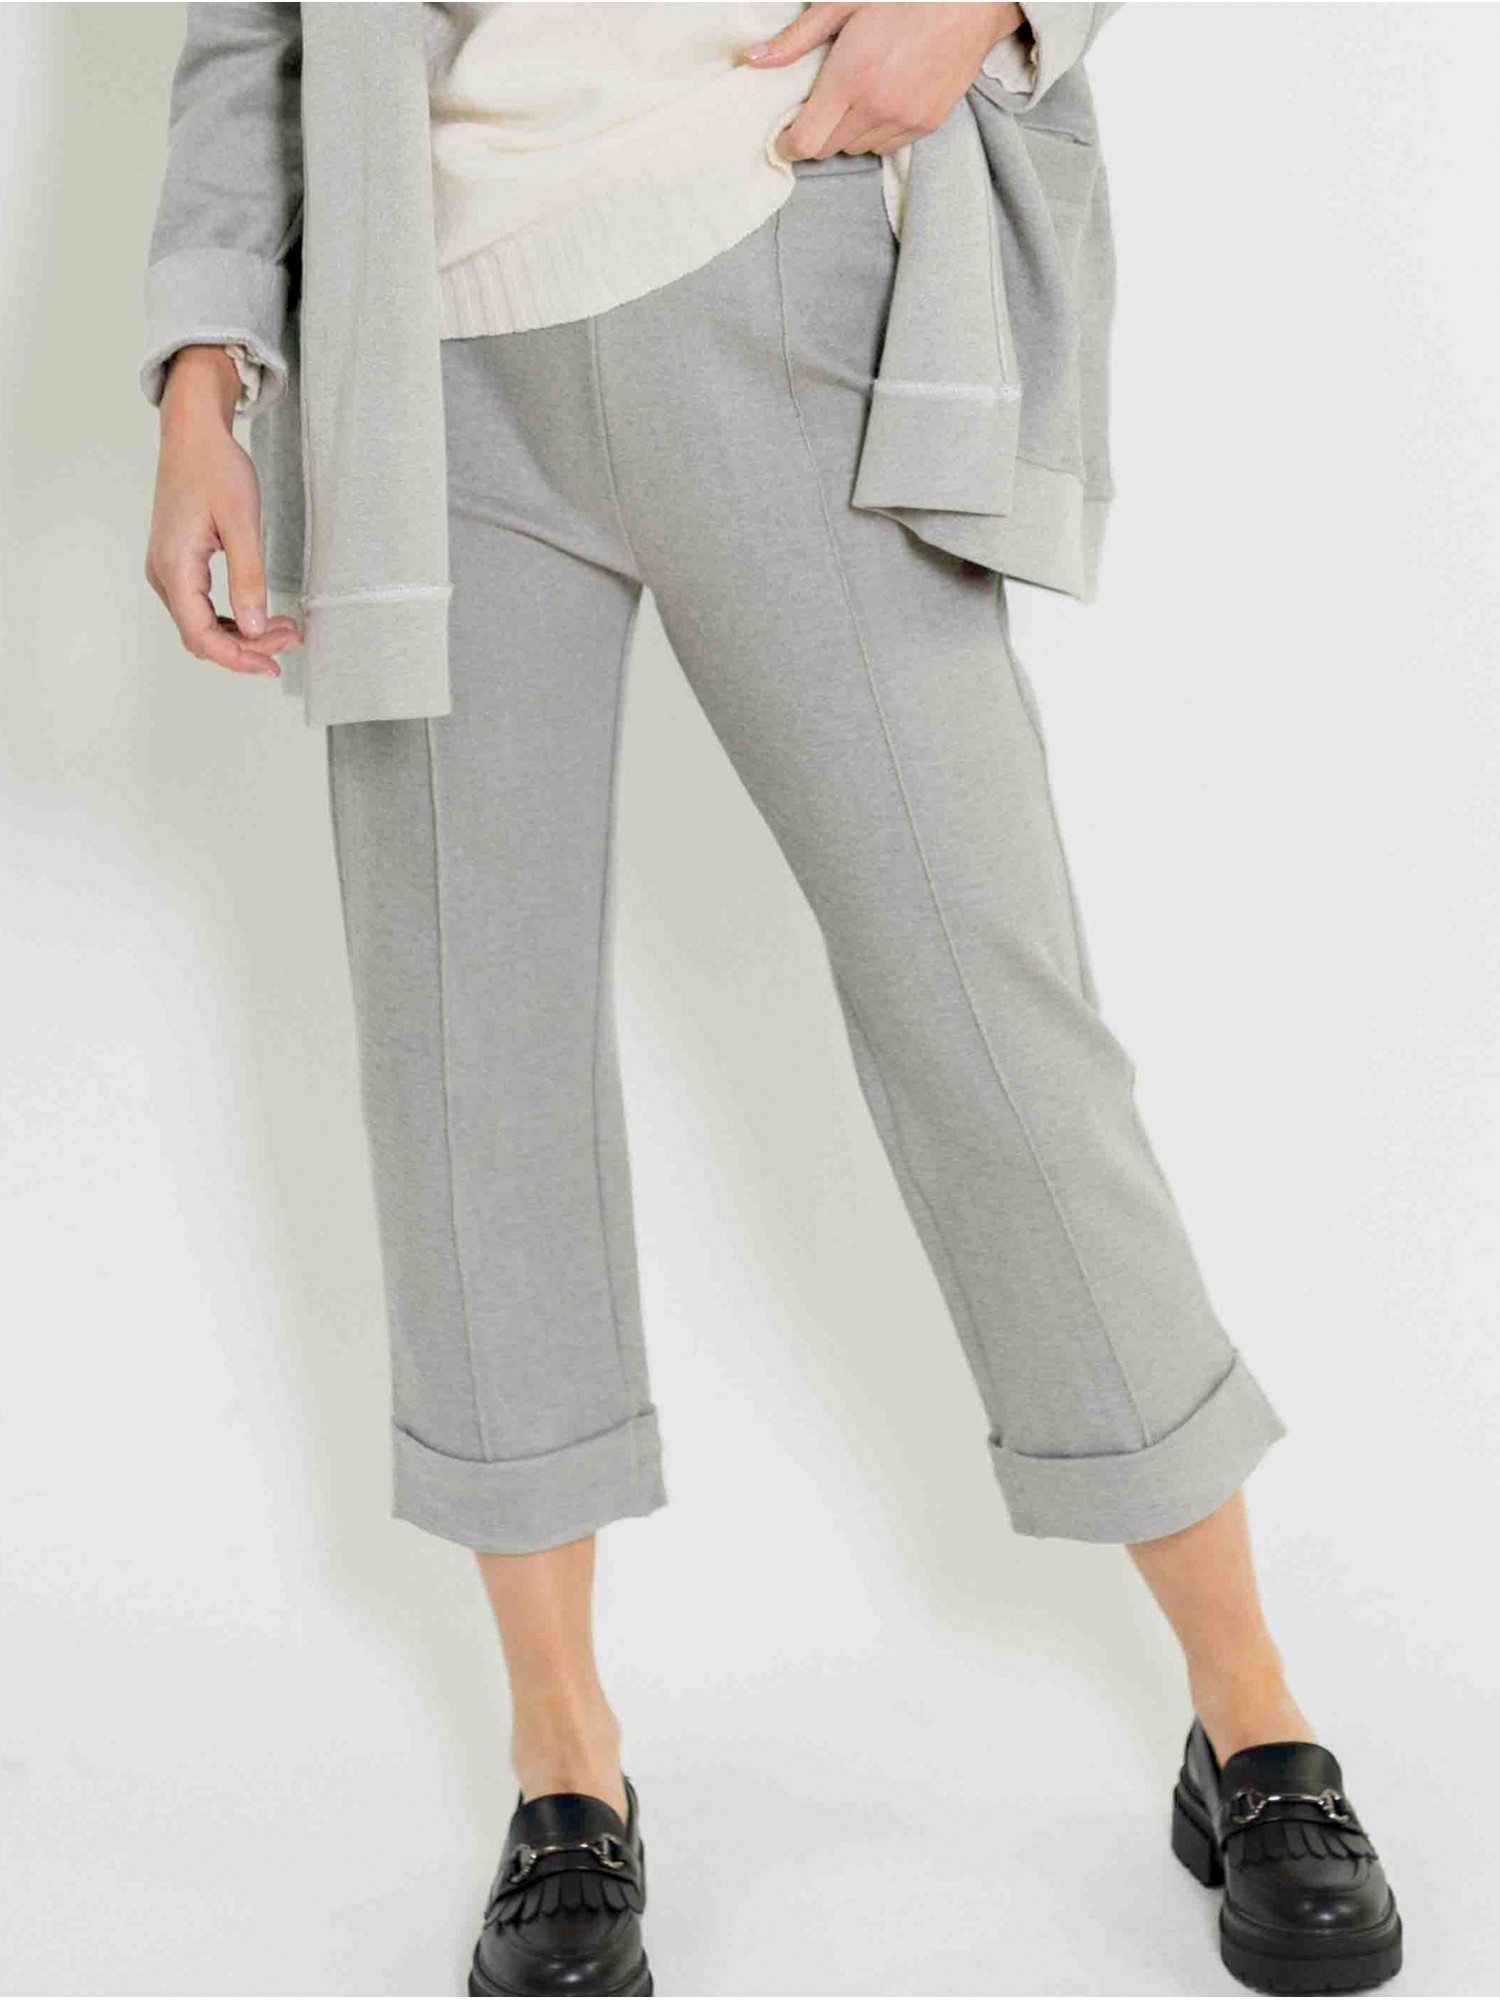 Pantalón tobillero Tope PAN Producto Básico en shop candelascloset. Color gris en tejido de algodón para mujer.